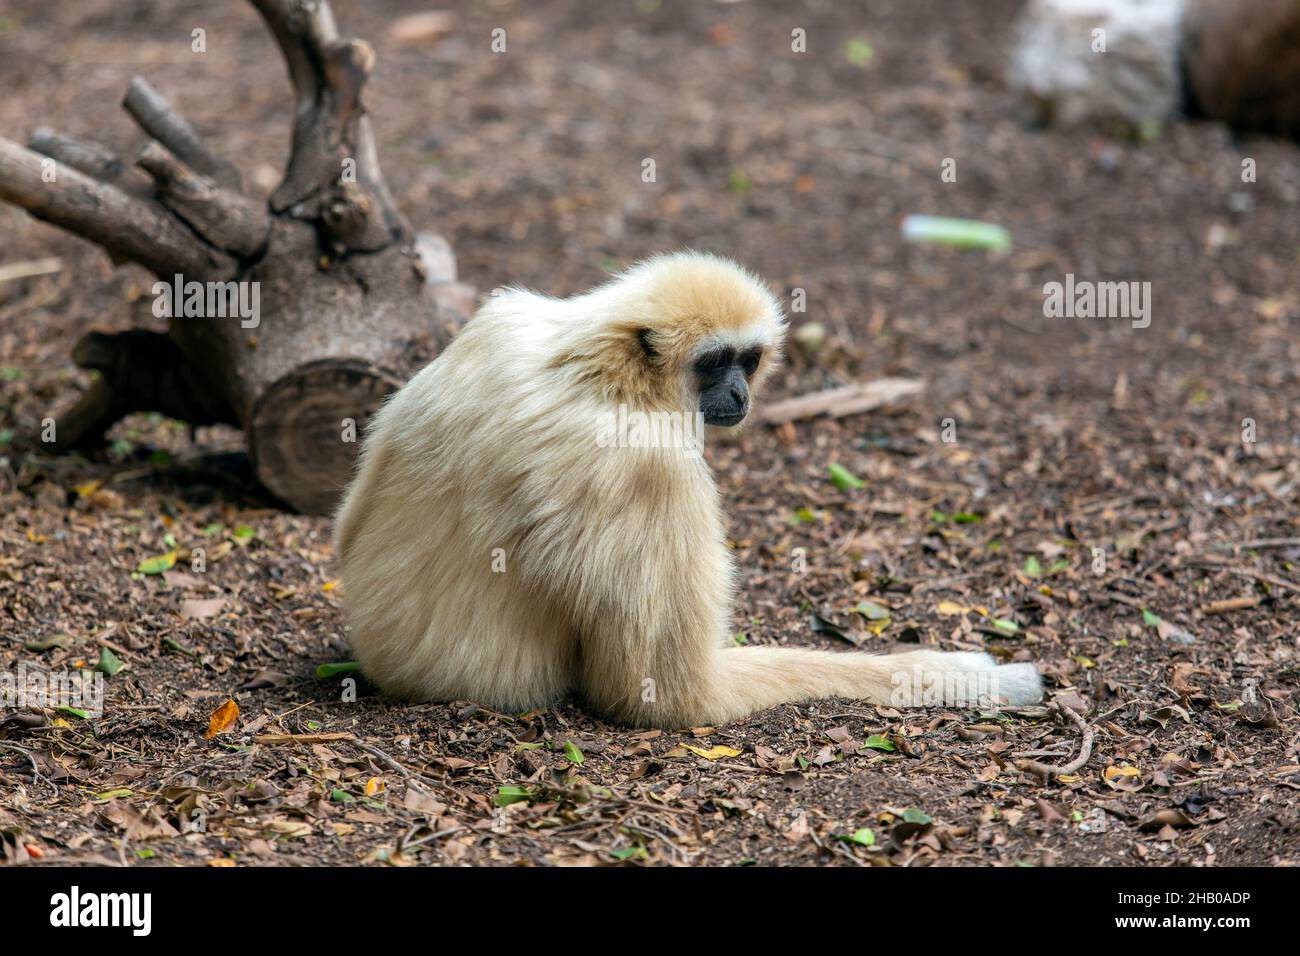 Schöner grauer Langur-Affe, der auf dem Boden liegt Stockfoto